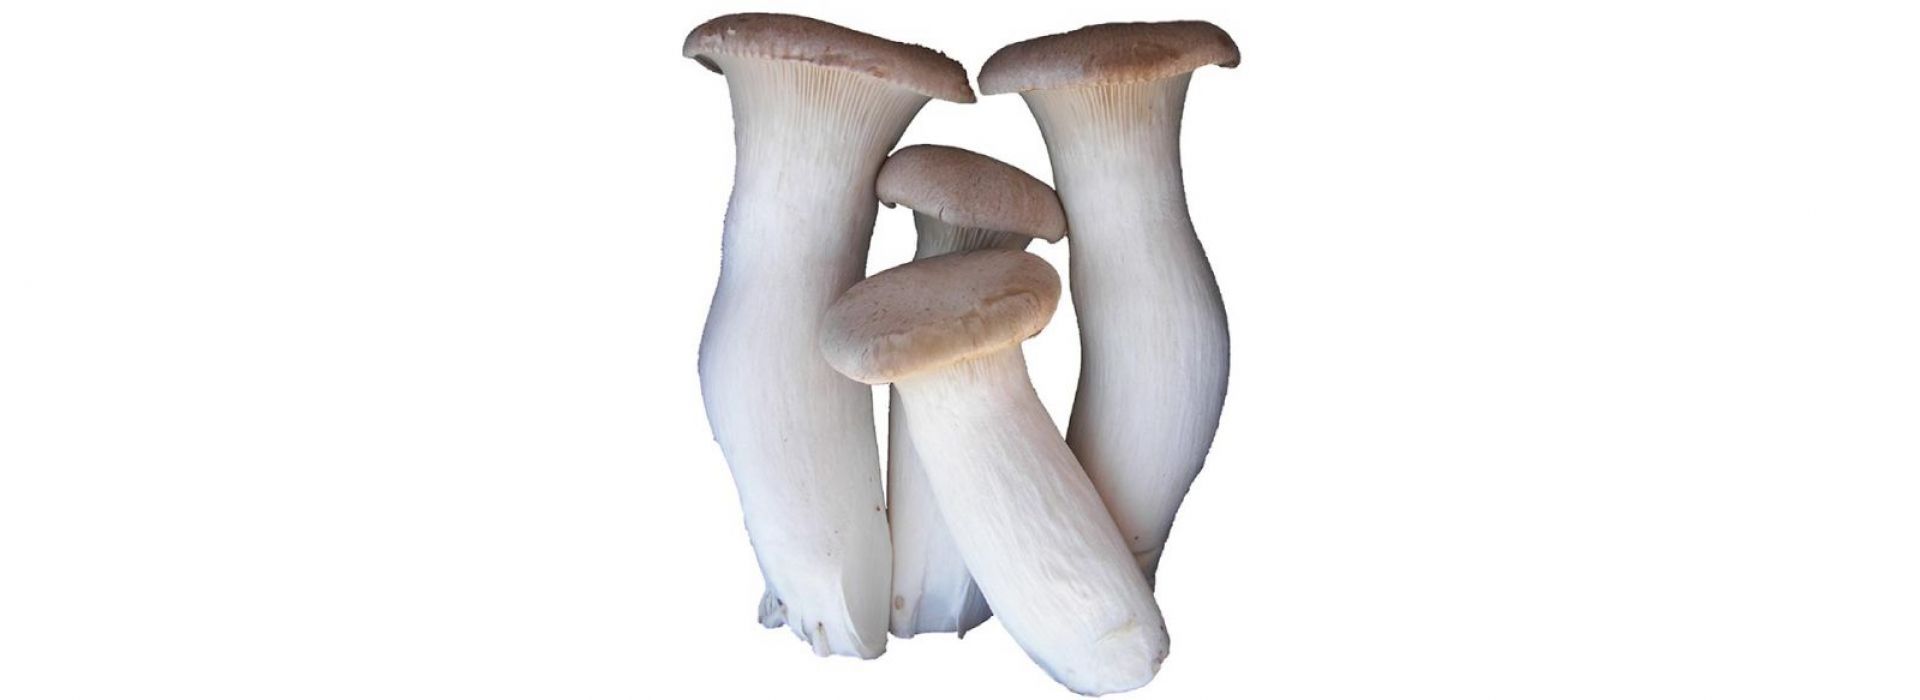 Mushroom Eryngii (King Oyster)